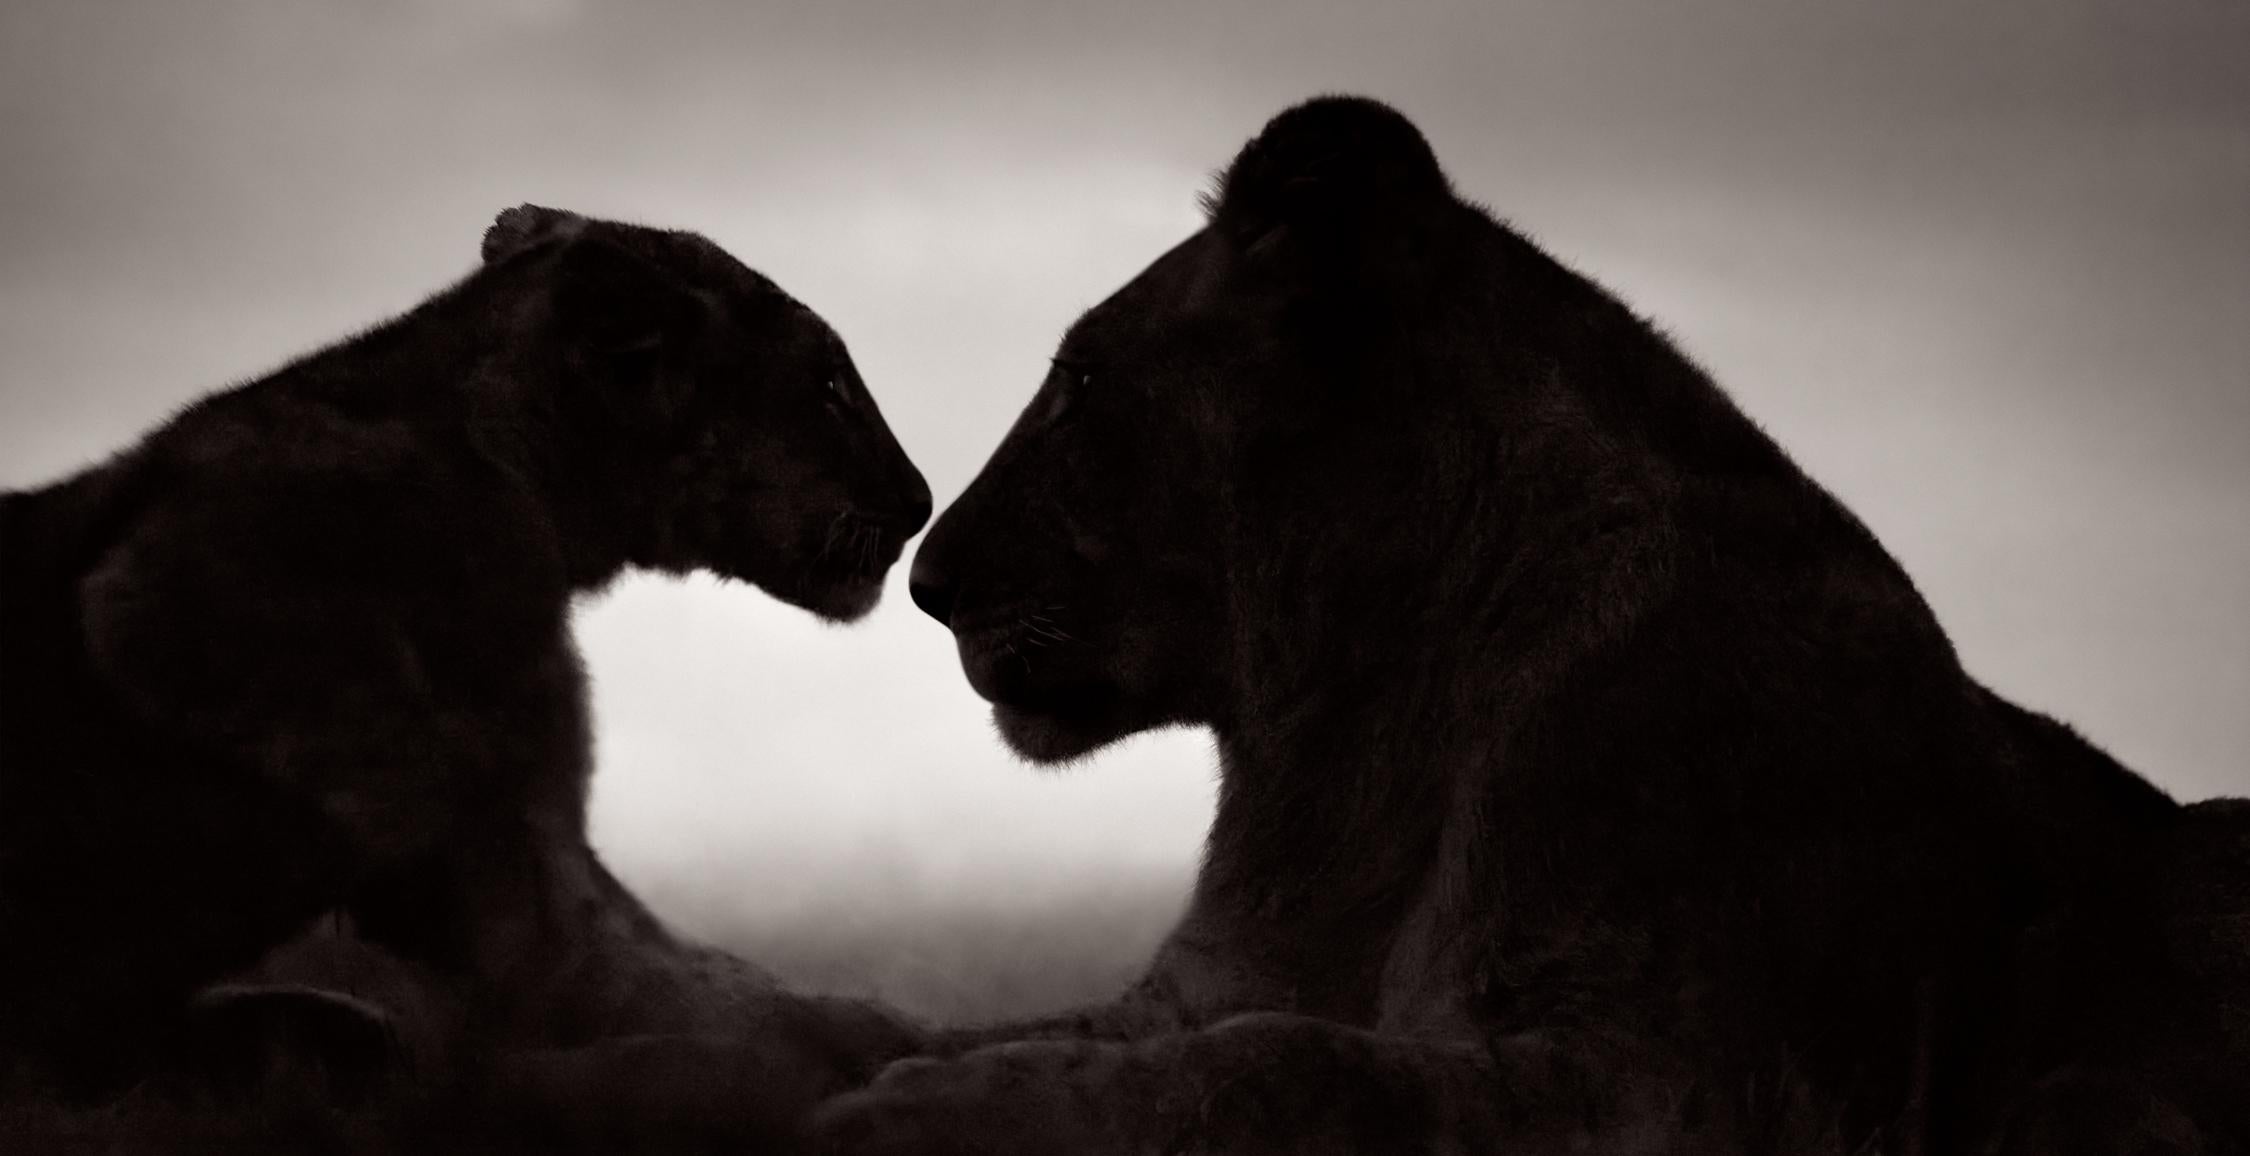 Drew Doggett Black and White Photograph – Silhouette von zwei Löwen, die sich in der Dämmerung gegenüberstehen, Schwarz und Weiß